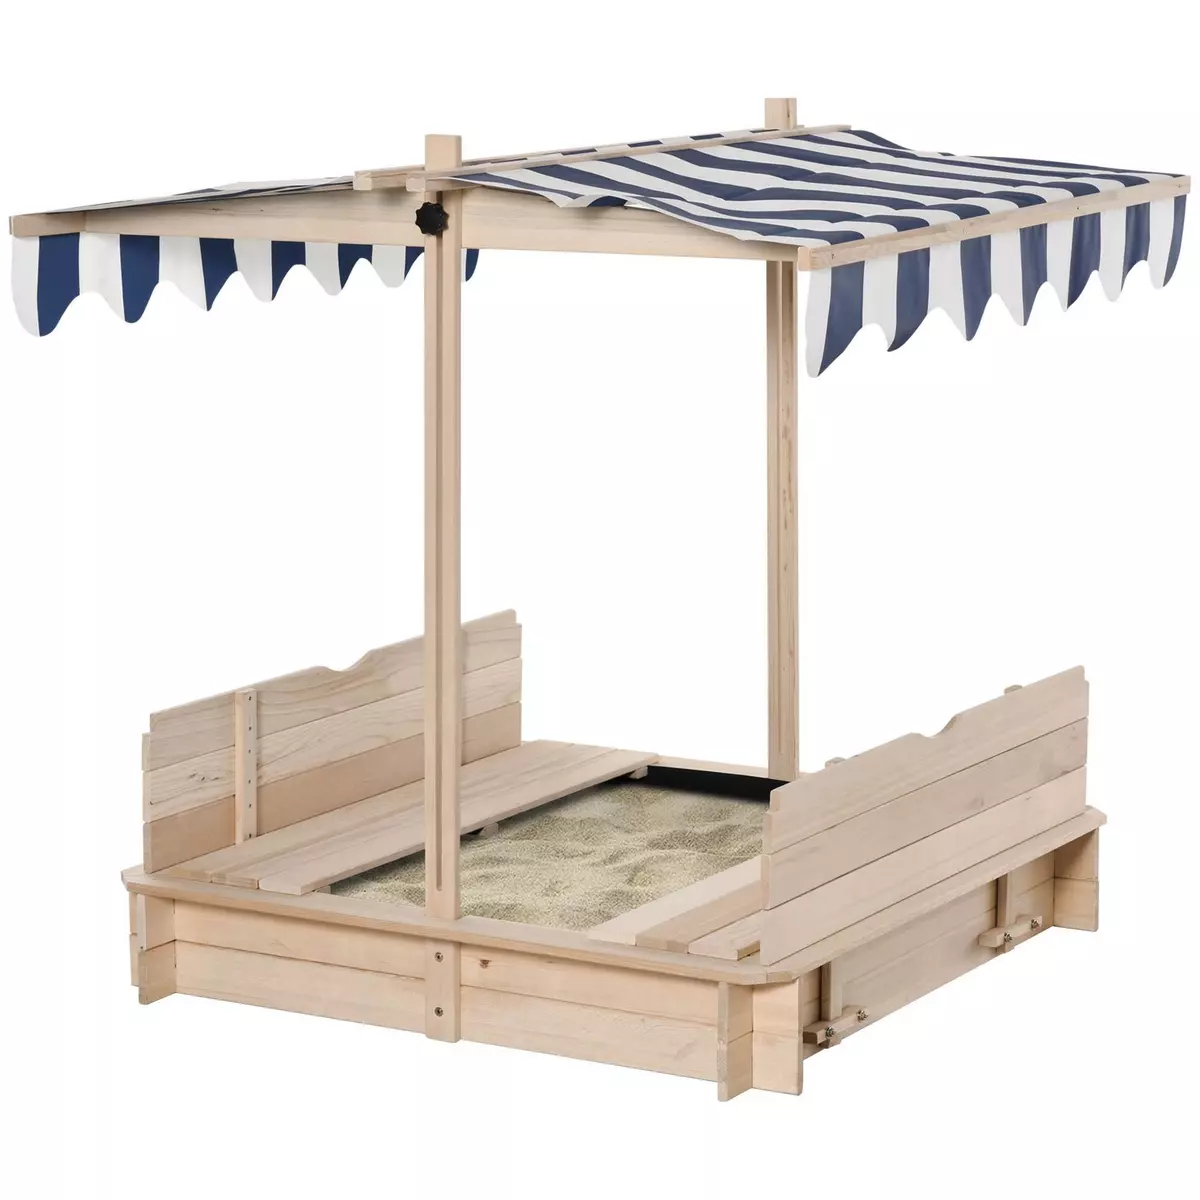 OUTSUNNY Bac à sable carré en bois pour enfant dim. 106L x 106l cm avec bancs et couvercle - auvent réglable